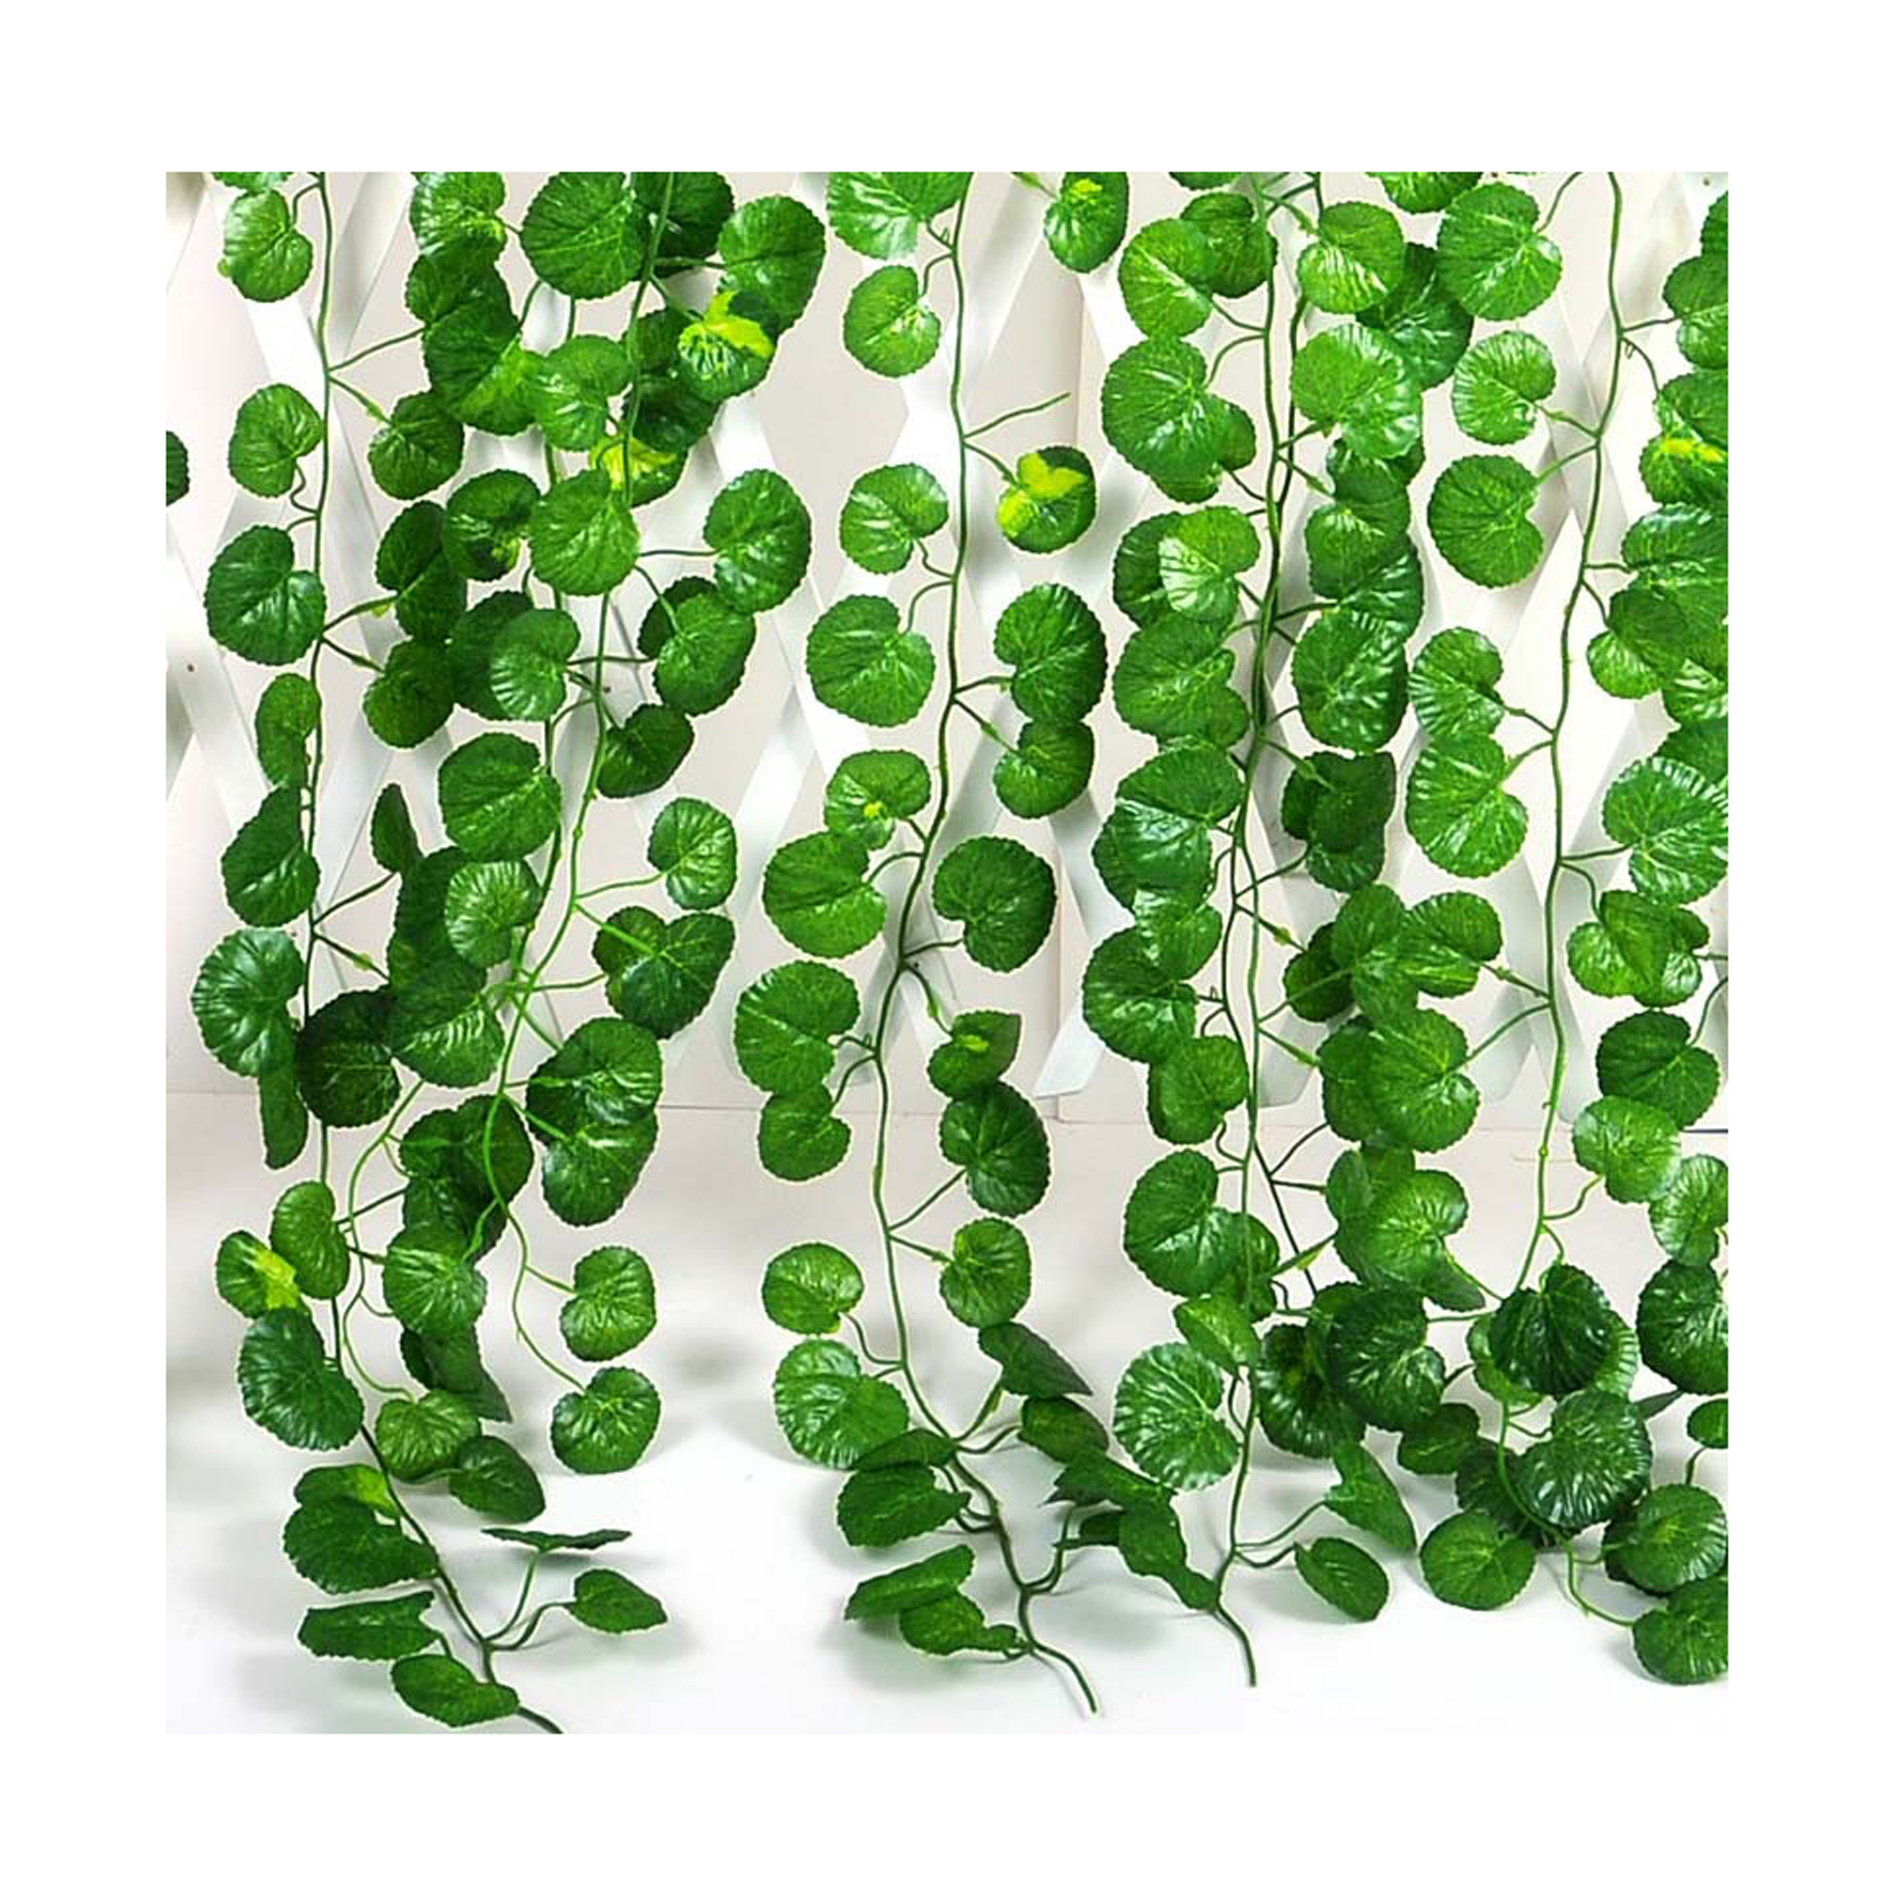 IDS | Rakuten: Artificial Ivy Vine Leaf Garland Plants Decoration ...